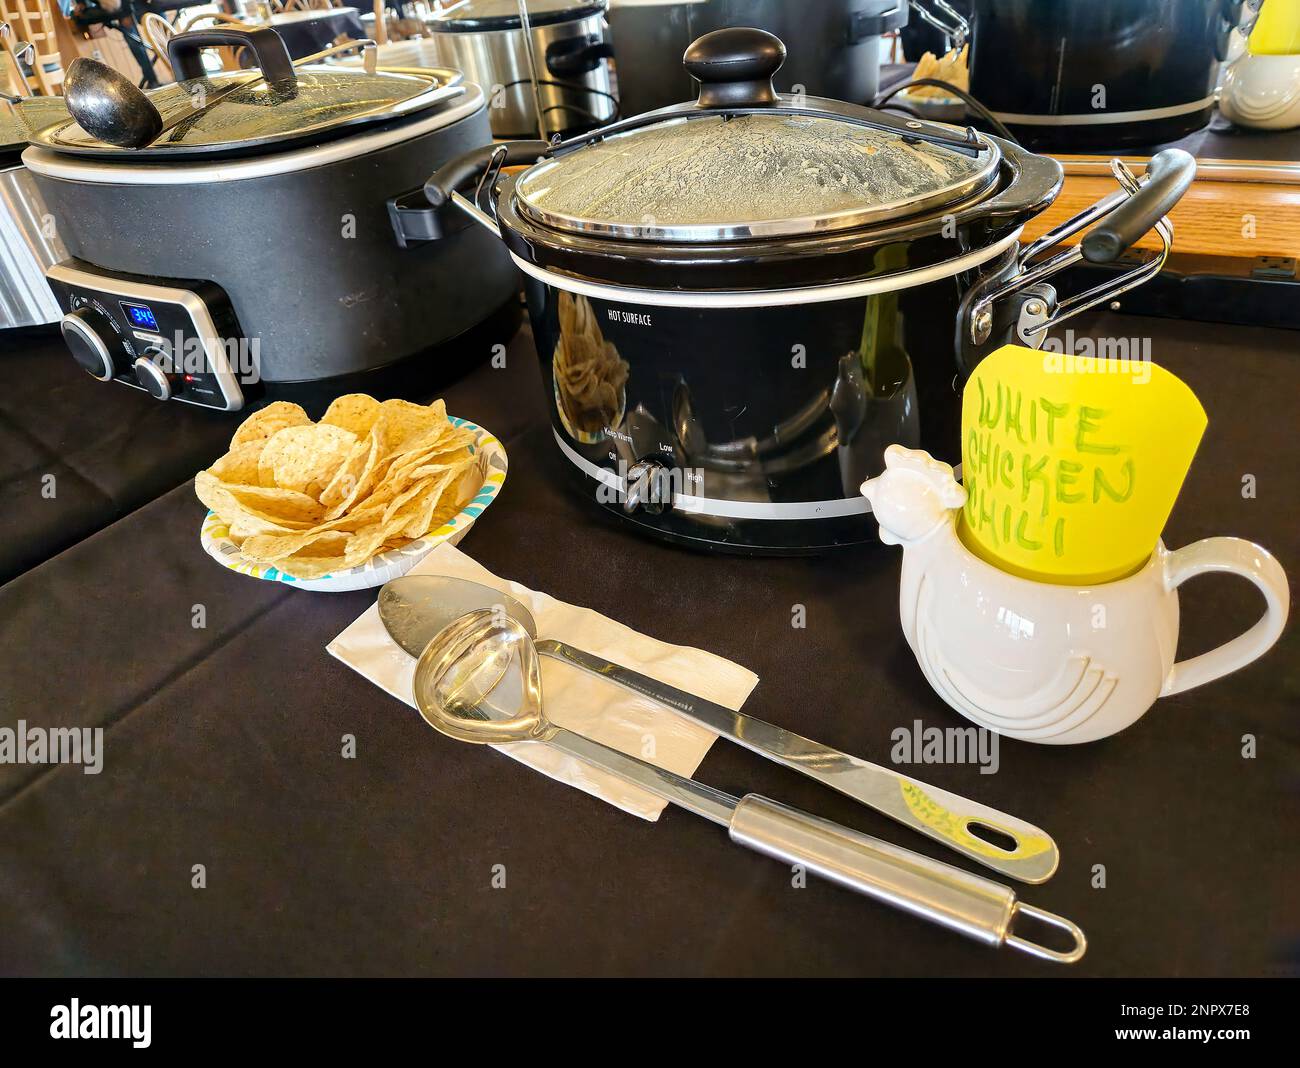 Fila de crockpots con patatas fritas y cubiertos para un concurso de cocina de chile Foto de stock